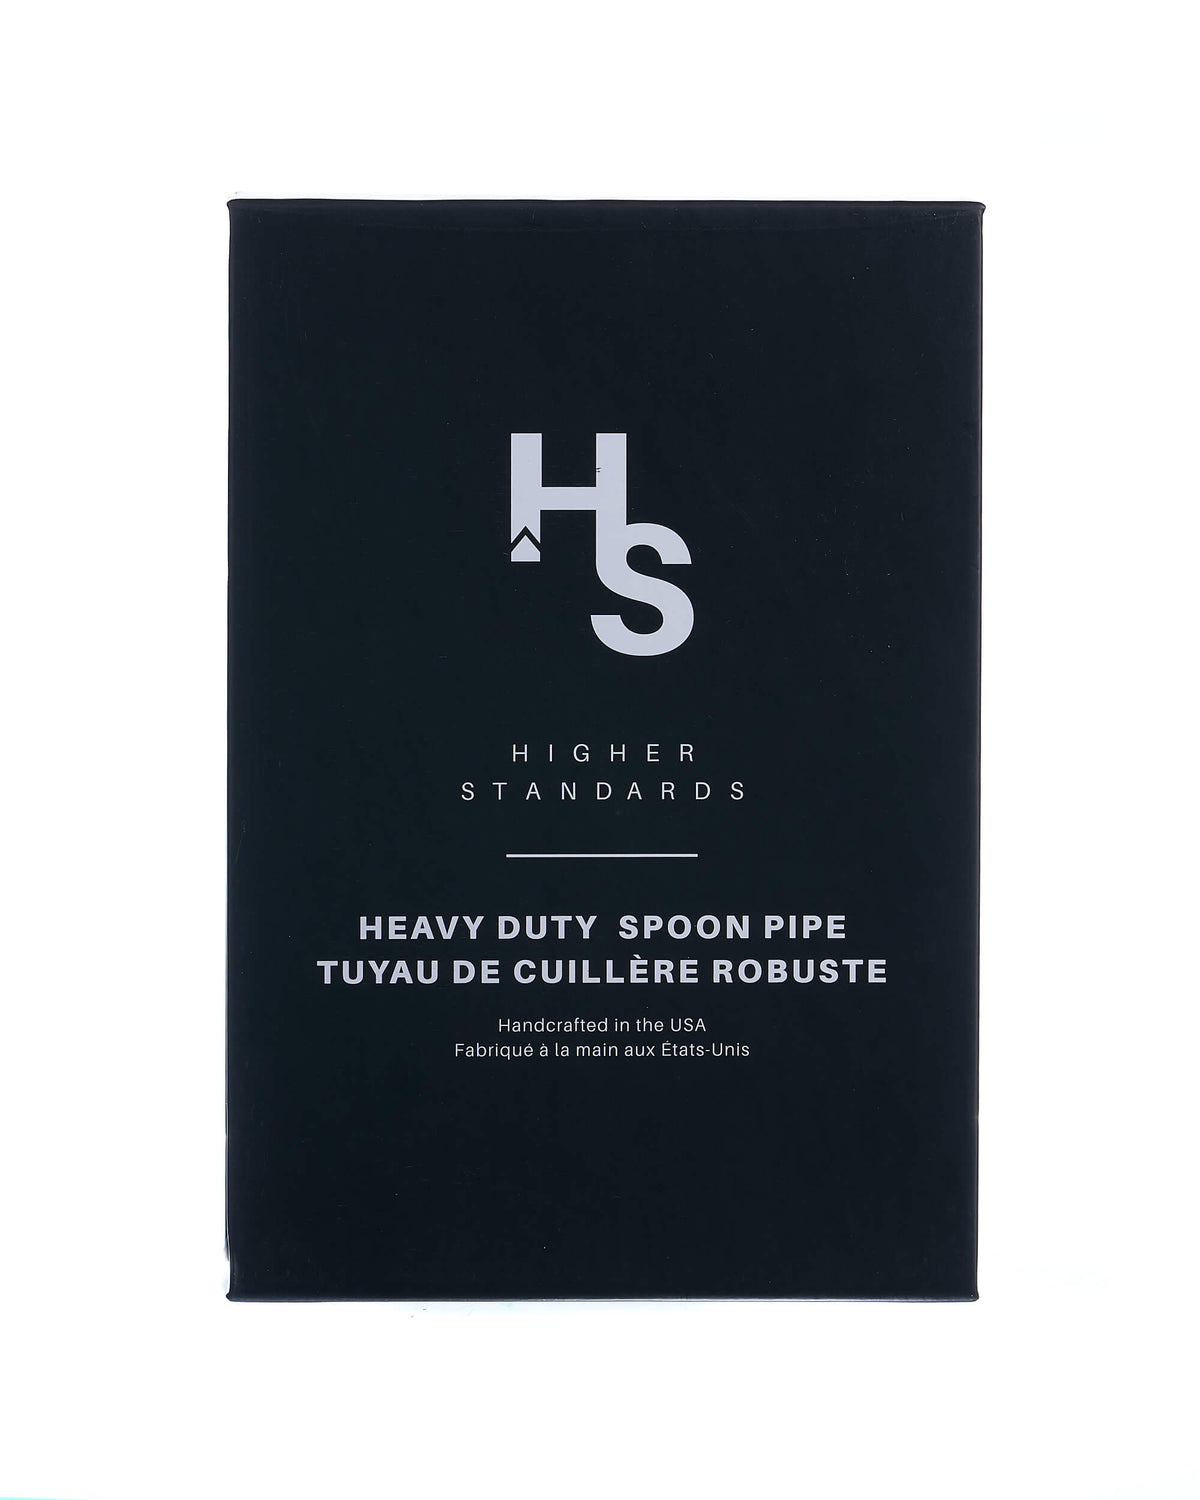 Heavy Duty Spoon Pipe - Higher Standards Higher Standards